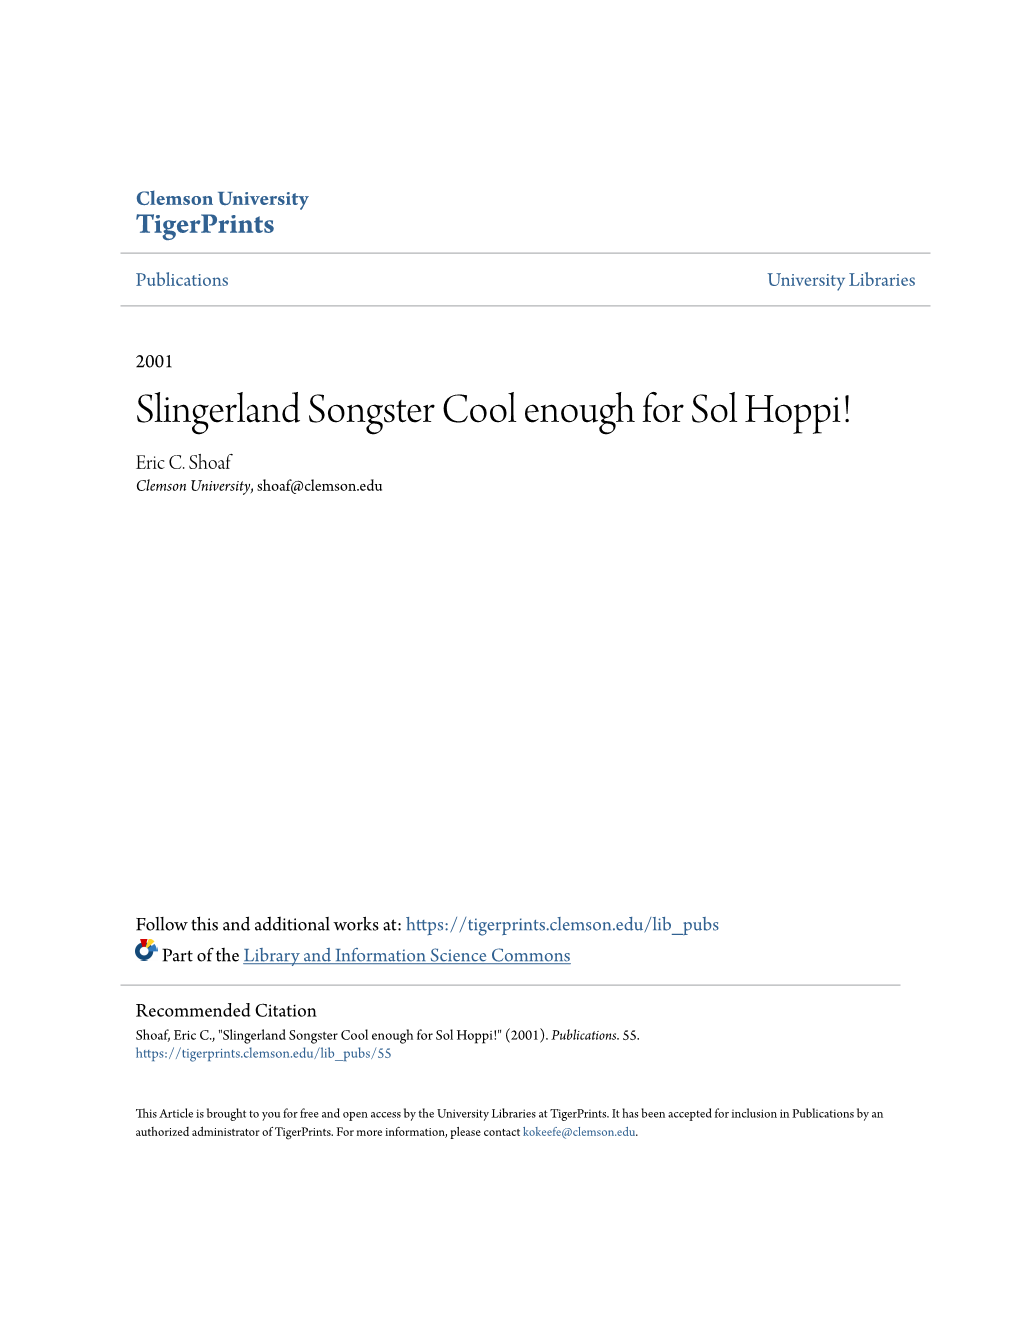 Slingerland Songster Cool Enough for Sol Hoppi! Eric C